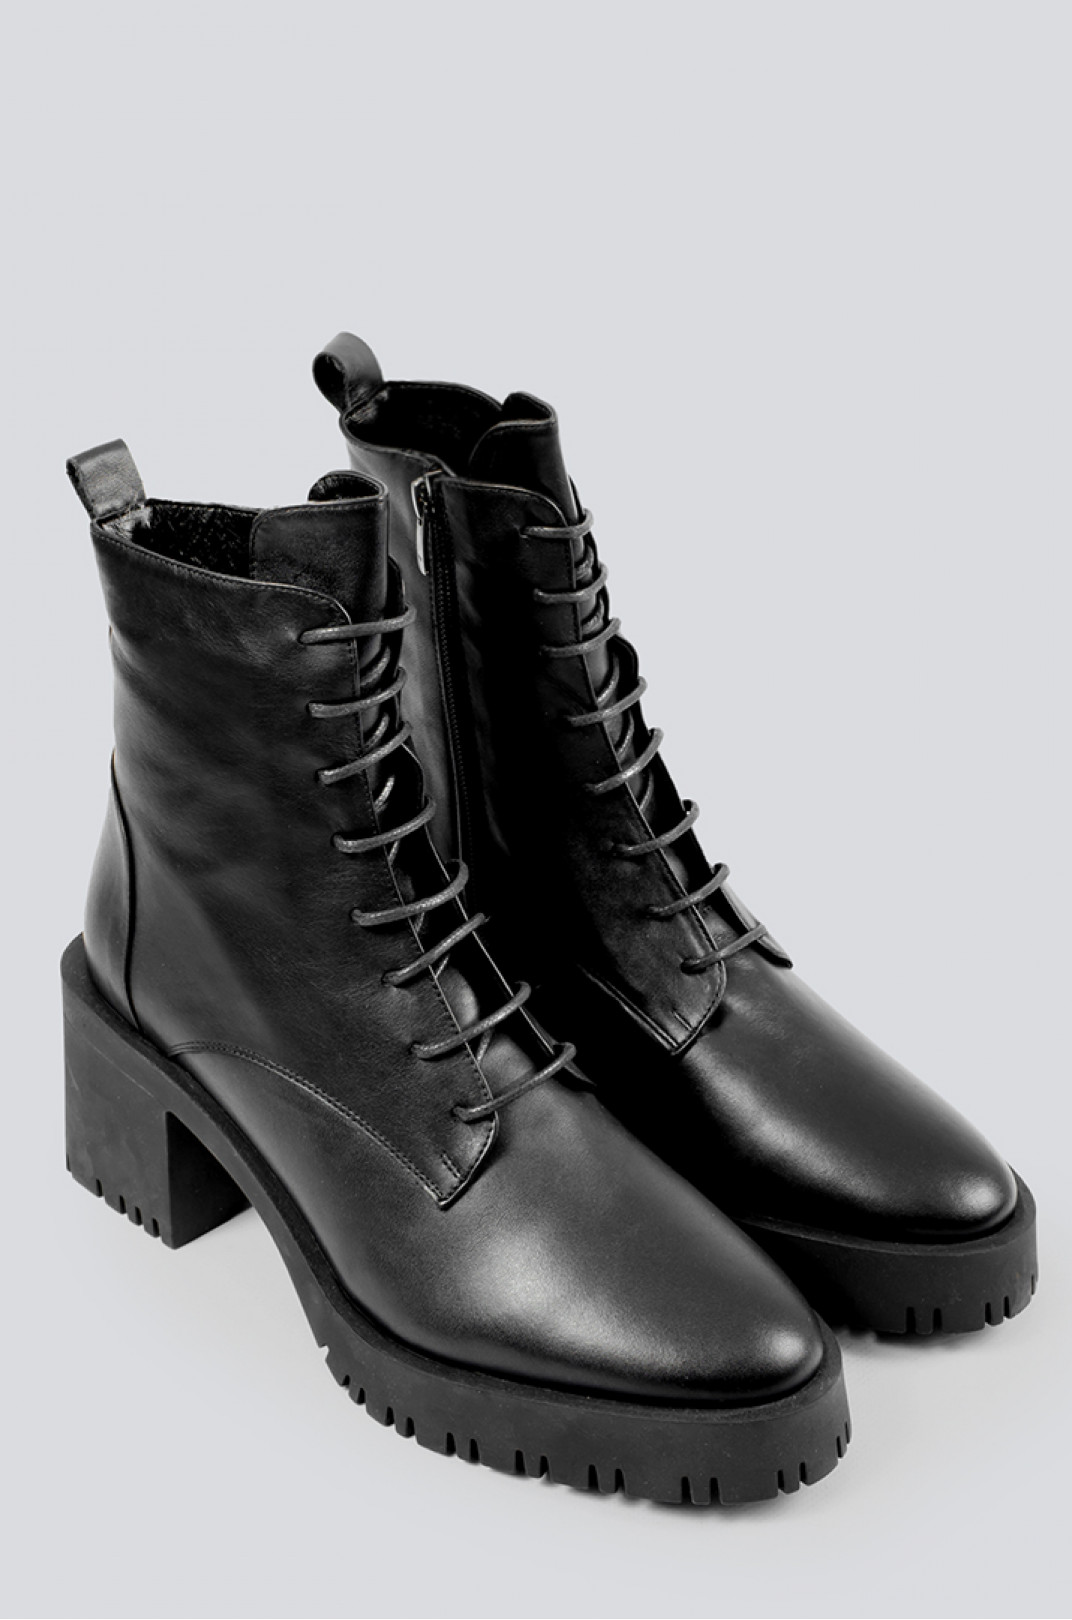 Ботинки черные кожаные на каблуке больших размеров